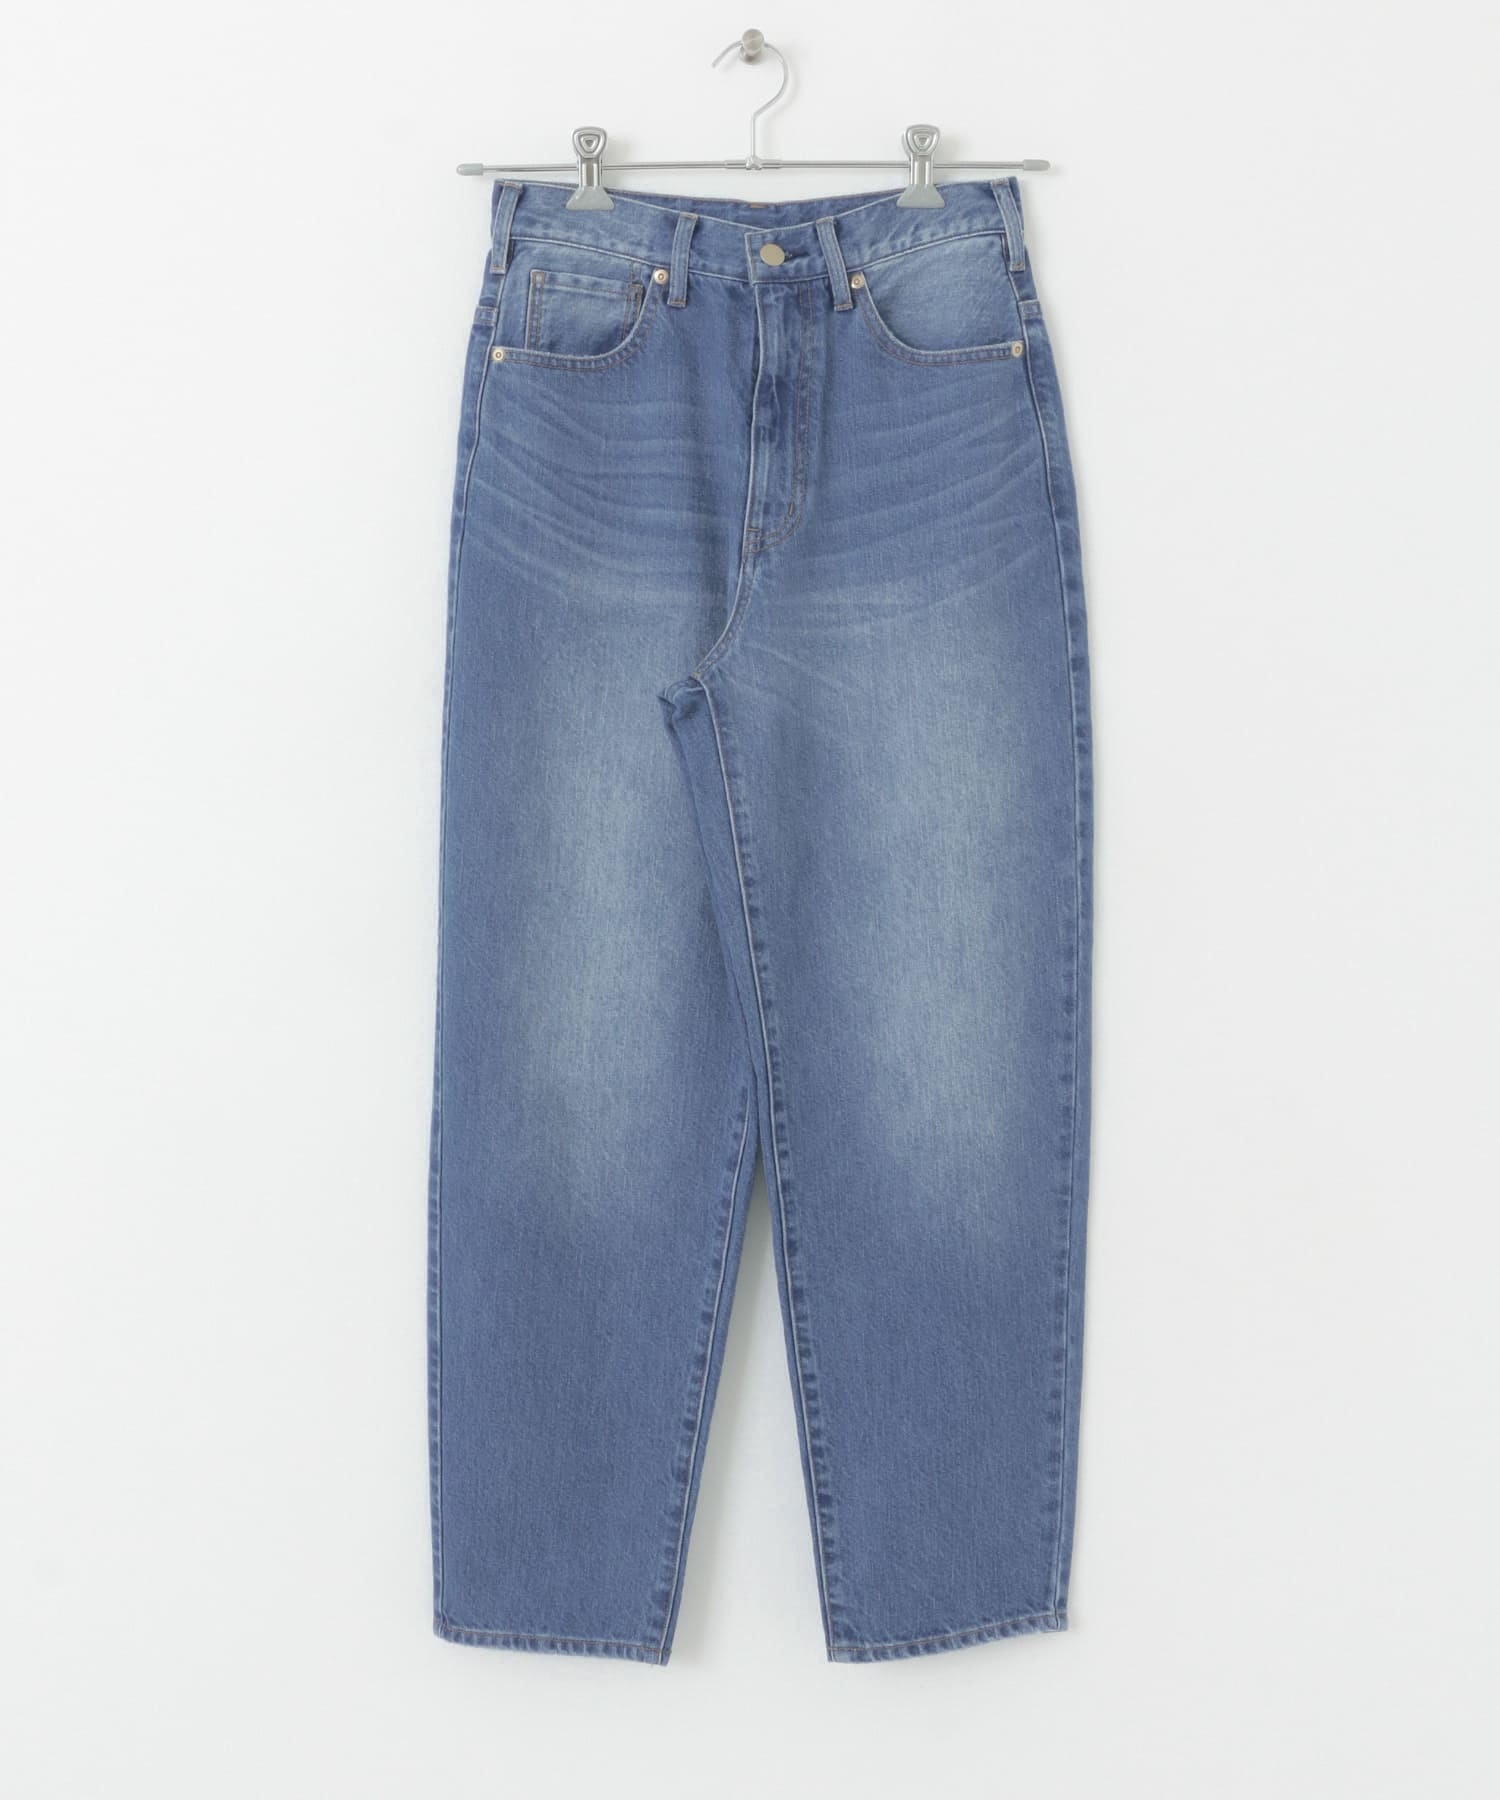 錐形牛仔褲(藍色-34-BLUE)